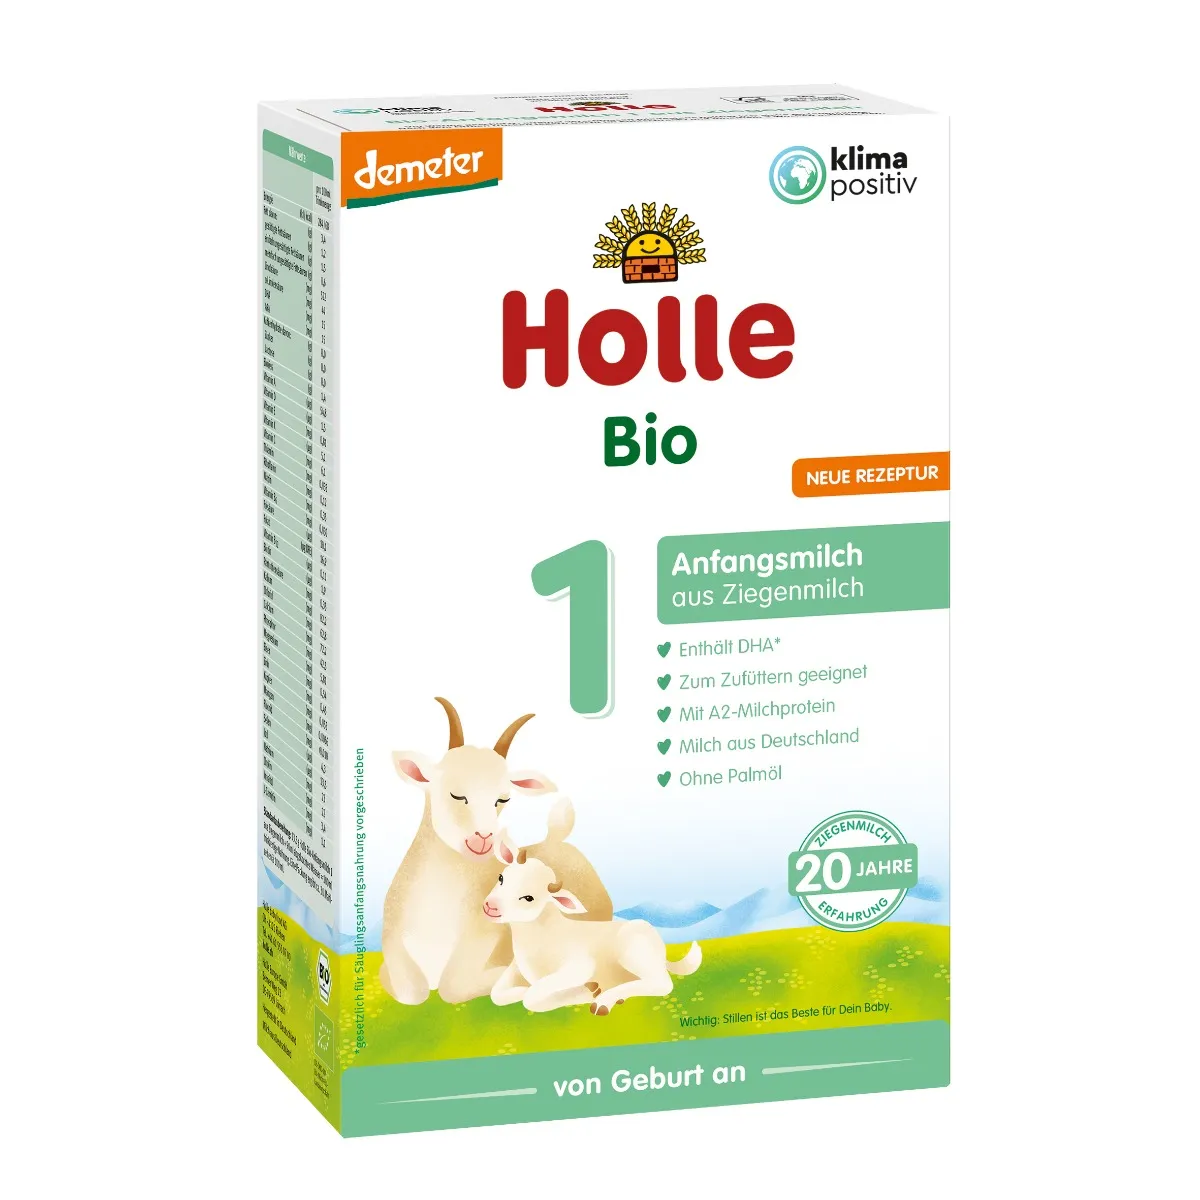 Holle Bio 1, mleko początkowe na bazie mleka koziego, 400 g 